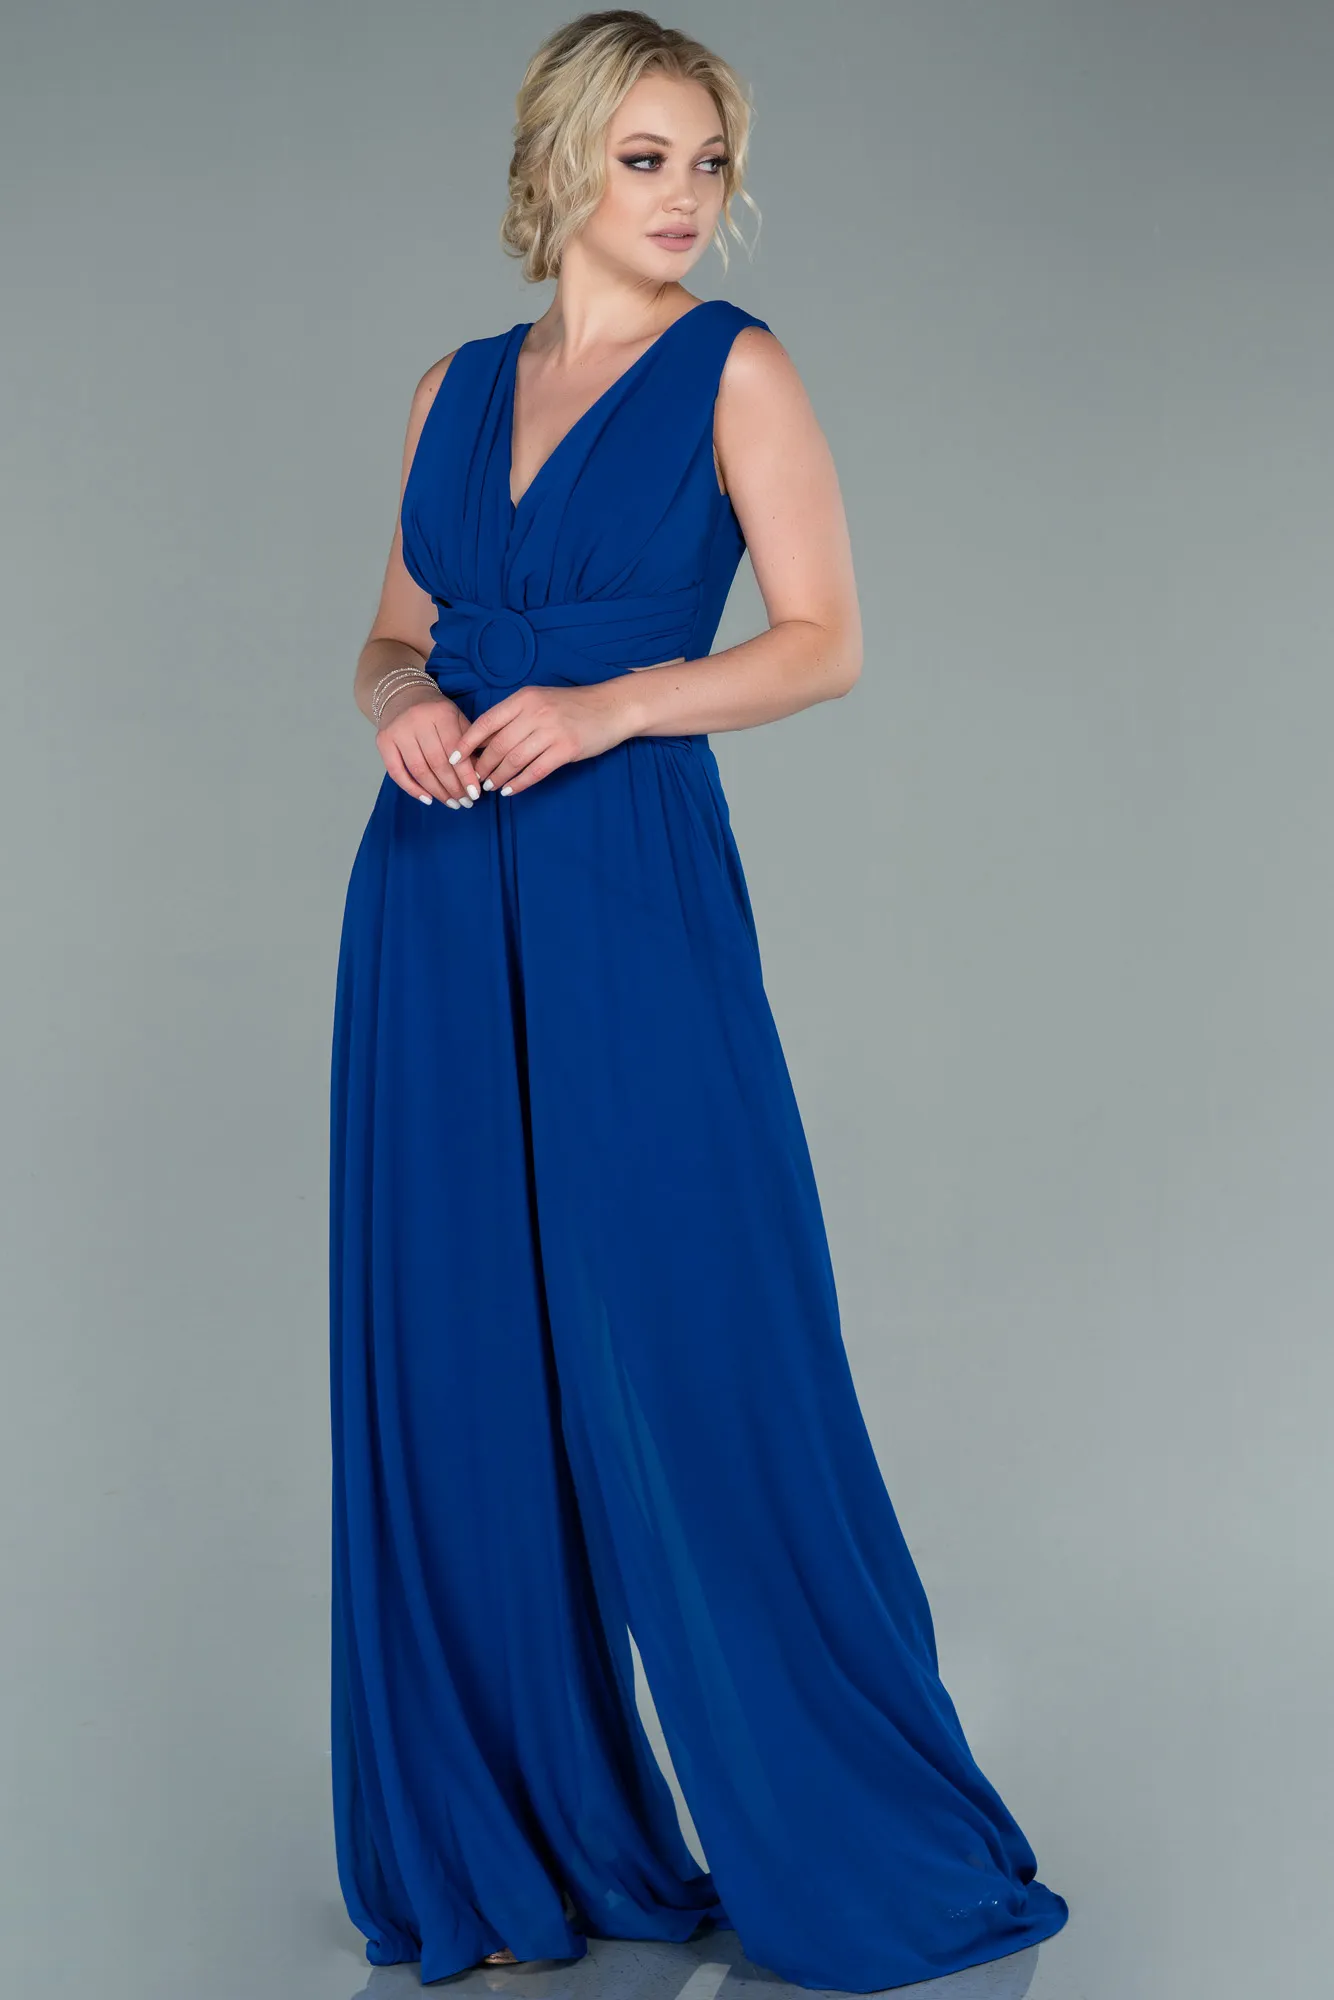 Sax Blue-Chiffon Invitation Dress ABT075